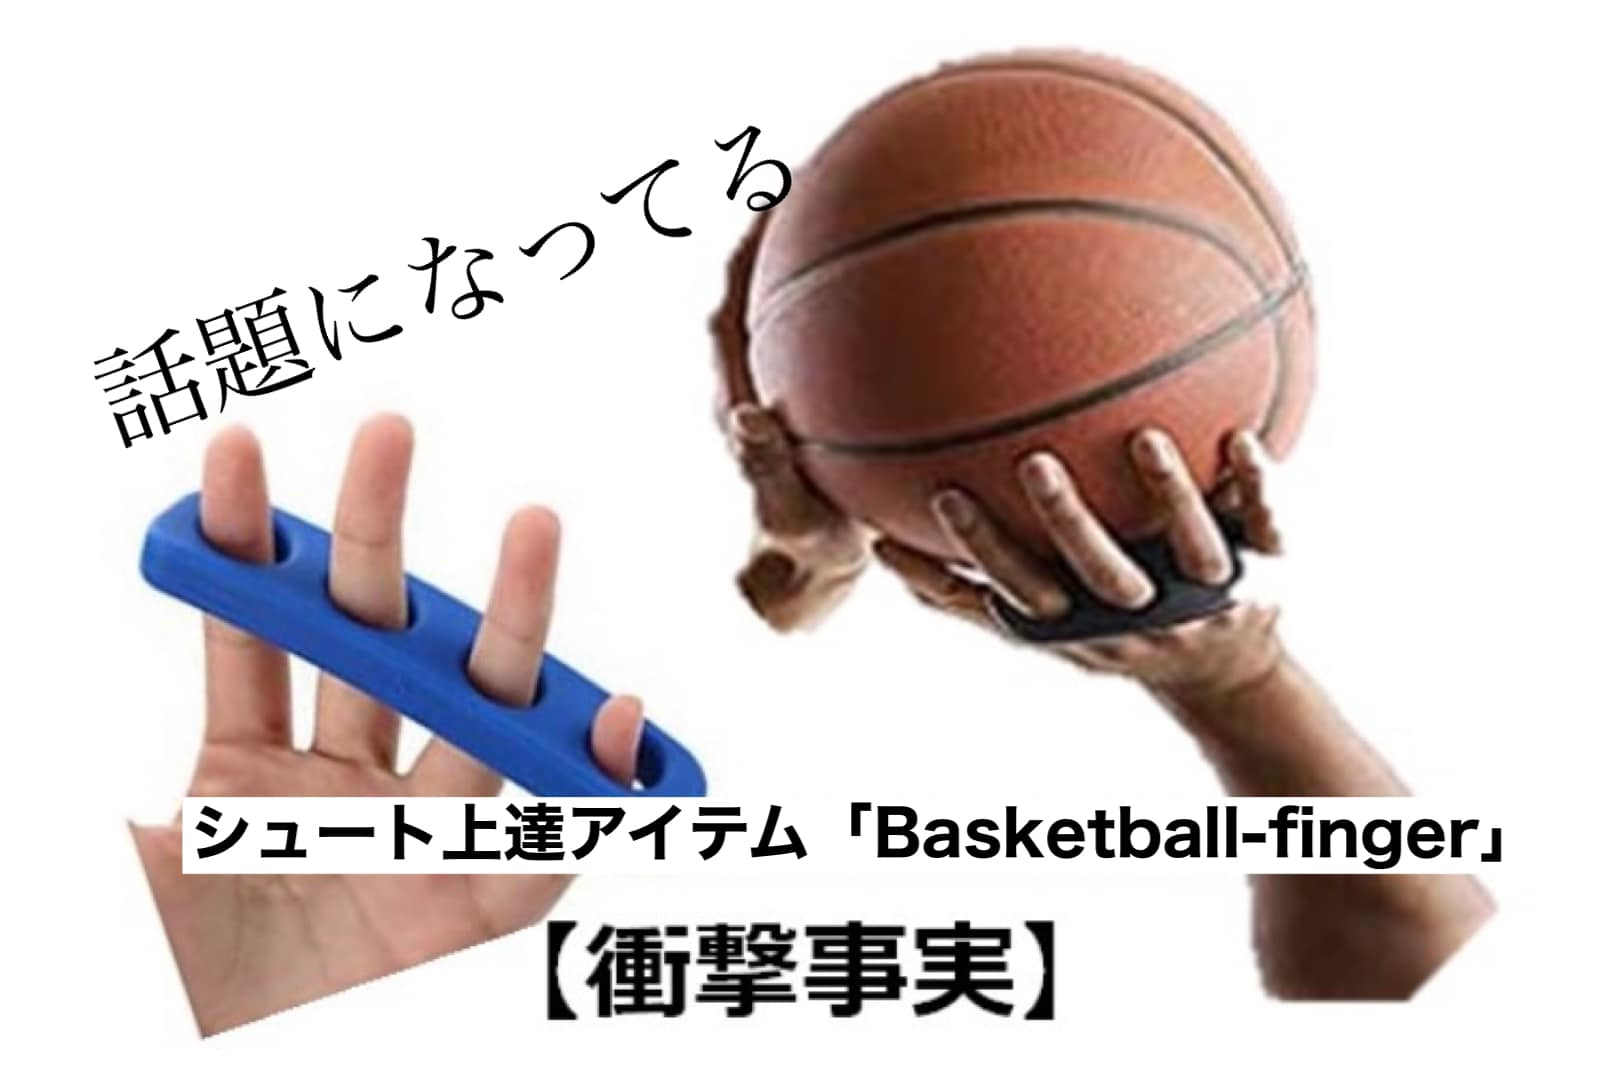 シュート上達アイテム「Basketball-finger」の効果